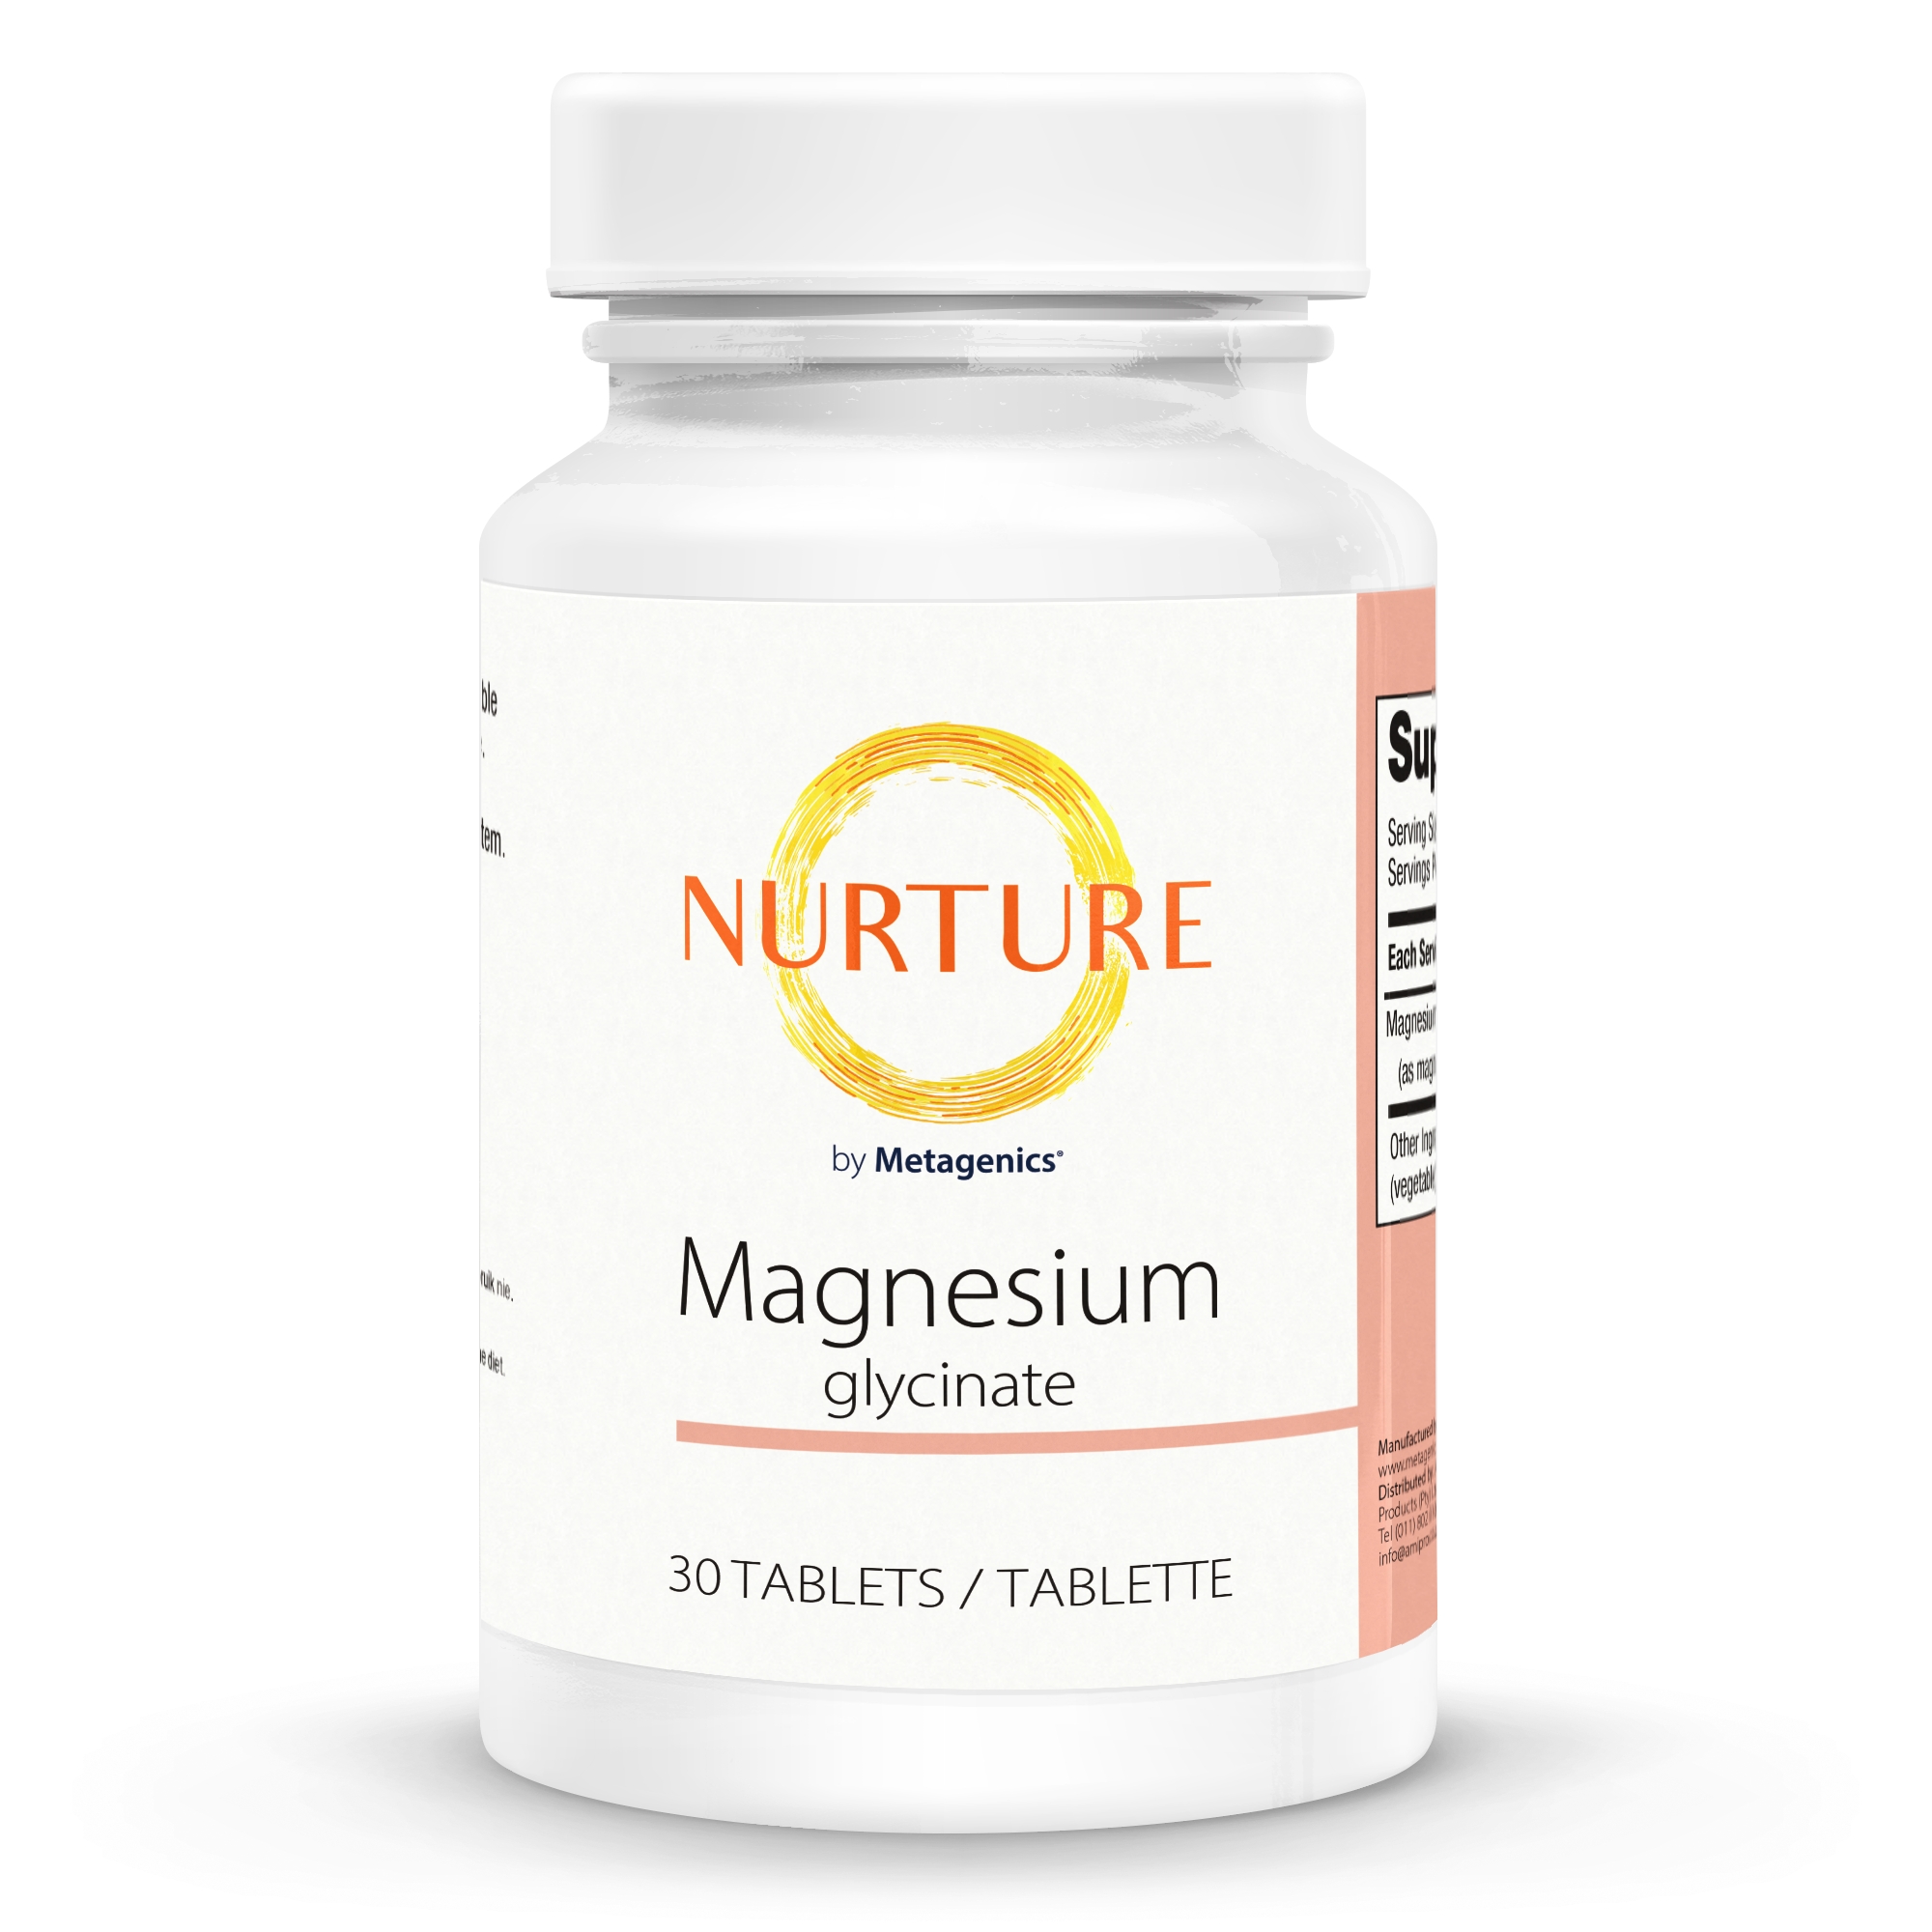 Nurture Magnesium Glycinate